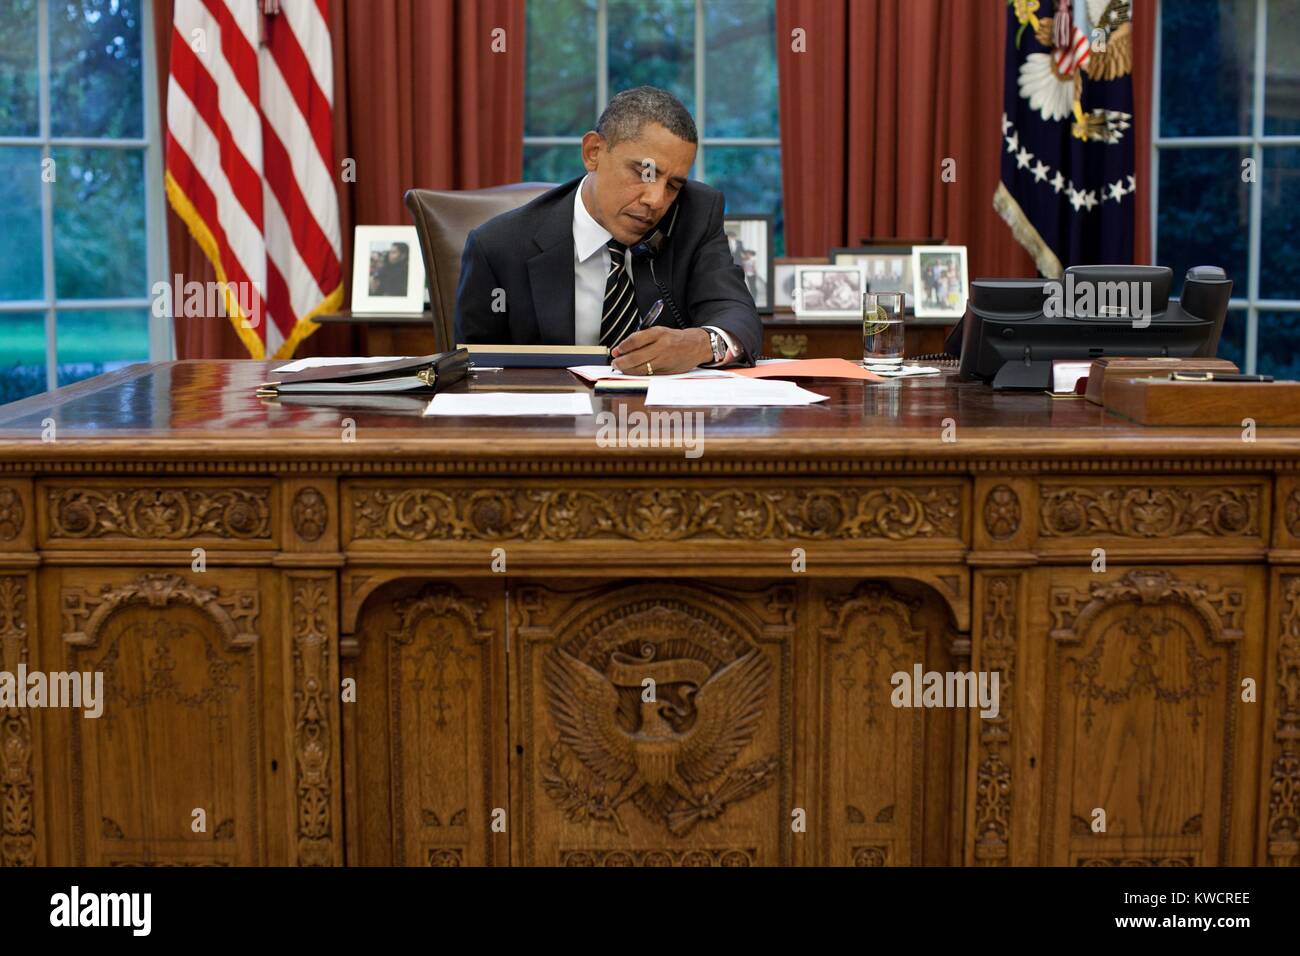 Präsident Barack Obama an seinem Schreibtisch im Oval Office, Sept. 7, 2011. Obama spricht mit reg. Rick Perry über die beispiellose Brände in Texas. (BSLOC 2015 3 2) Stockfoto